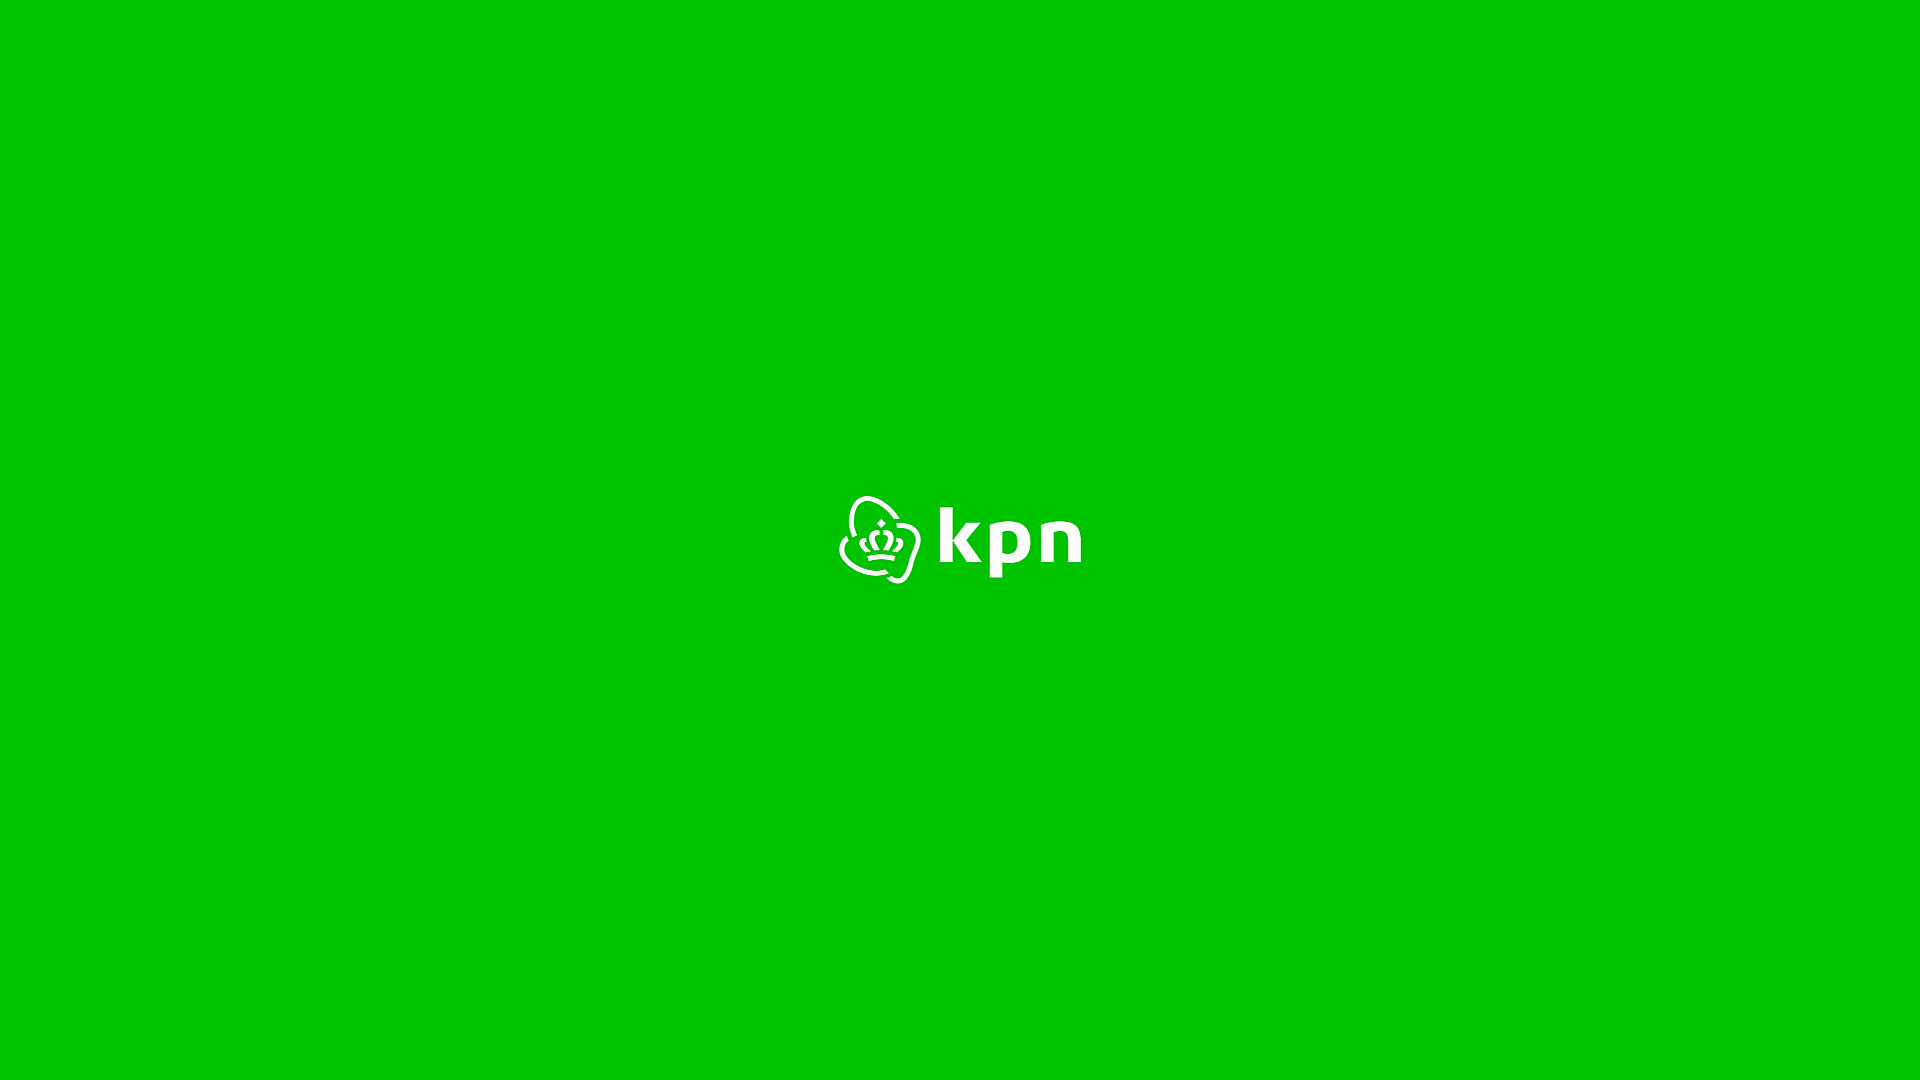 KPN Green Logo